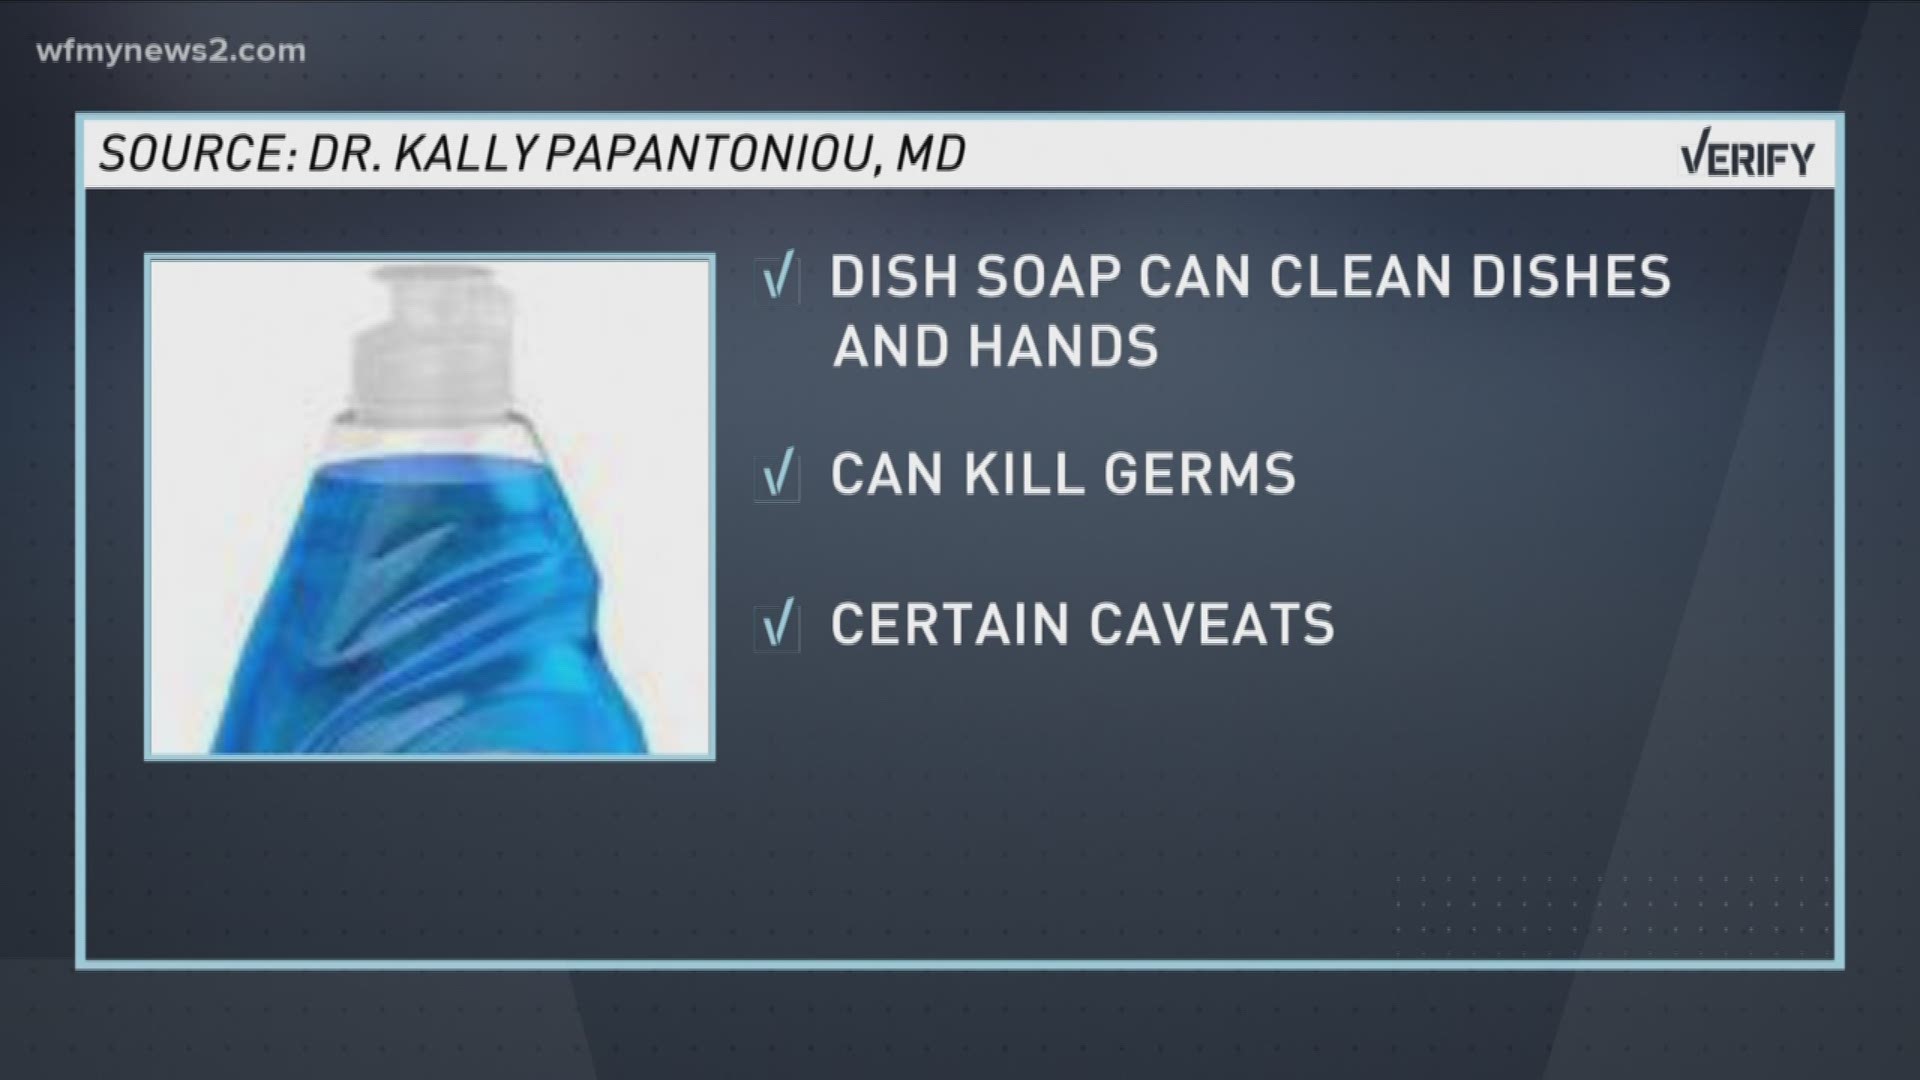 Verify: Hand Soap v. Dish Soap